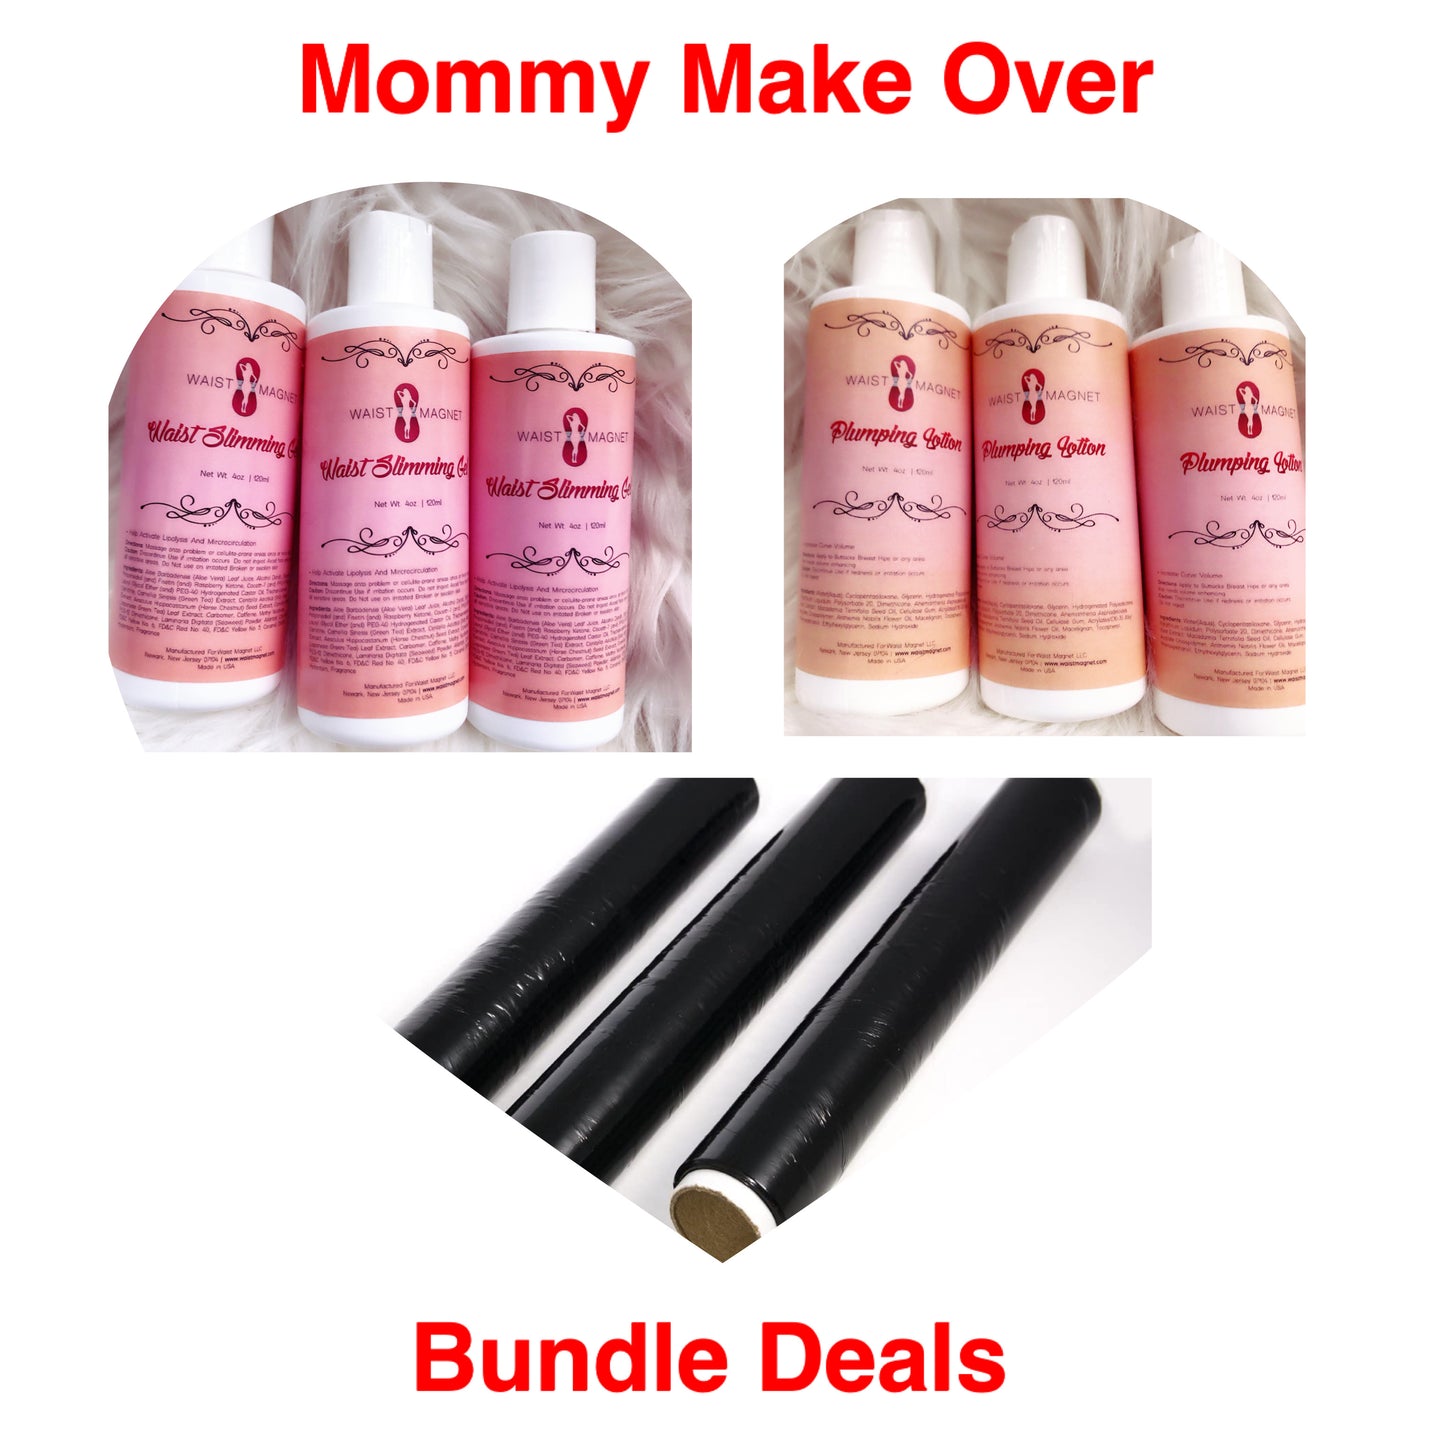 Mommy Make Over Bundle Deals